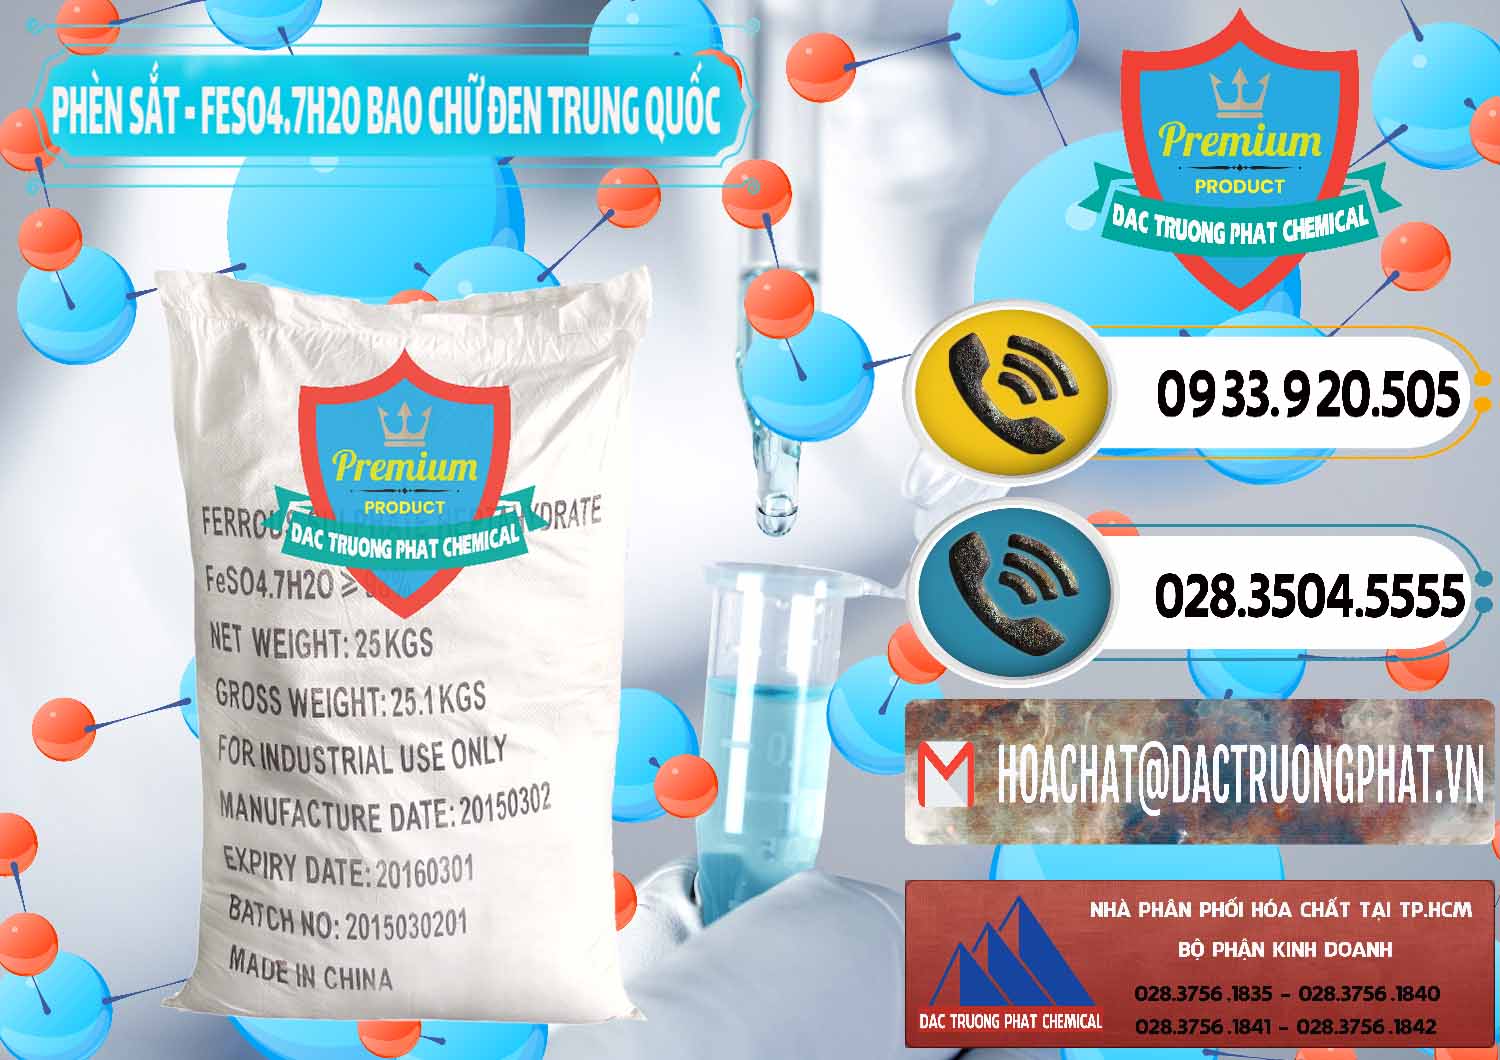 Bán & cung ứng Phèn Sắt - FeSO4.7H2O Bao Chữ Đen Trung Quốc China - 0234 - Cty kinh doanh và cung cấp hóa chất tại TP.HCM - hoachatdetnhuom.vn